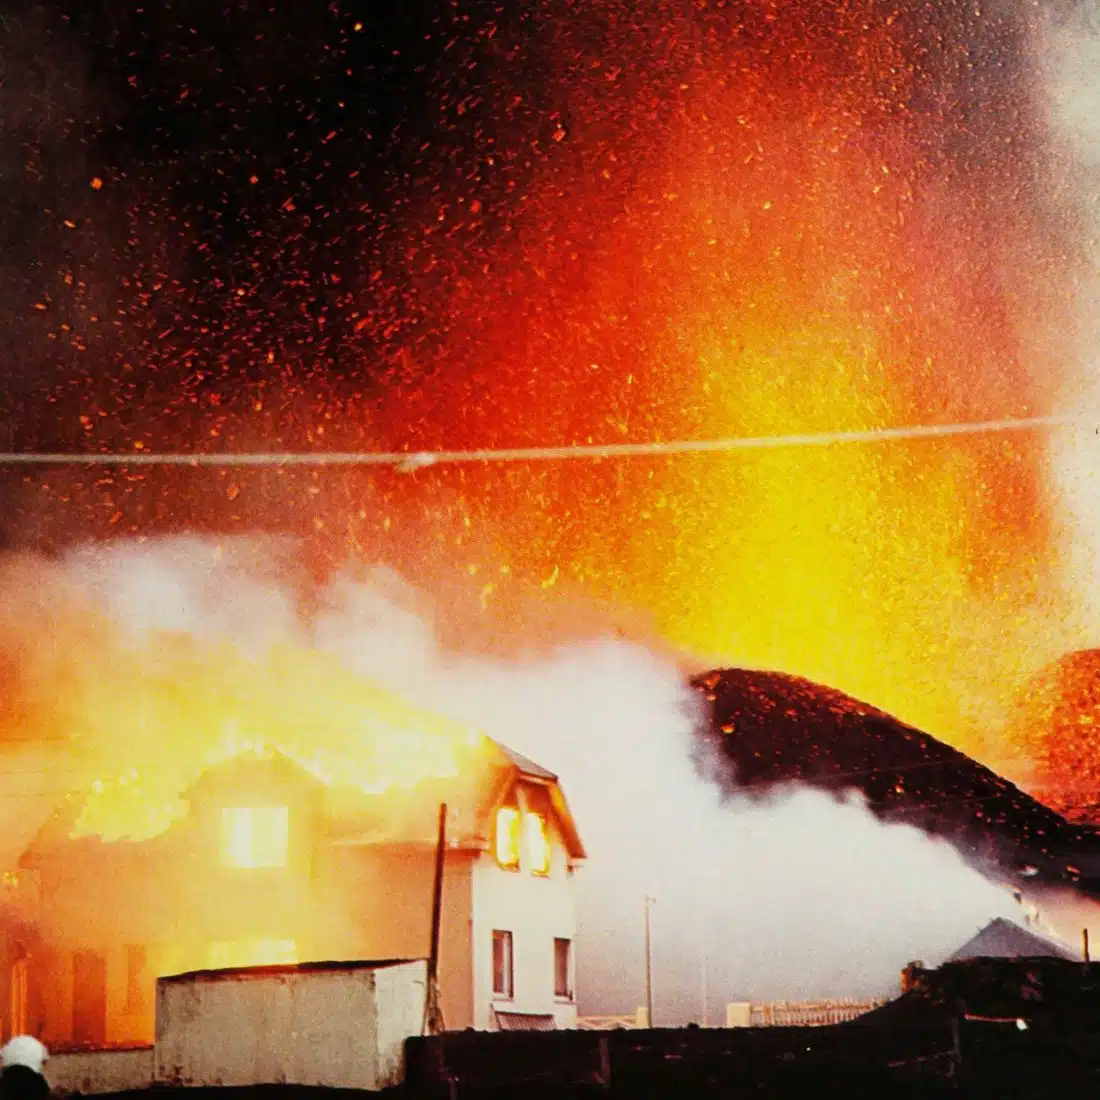 eldfell 1973 eruption